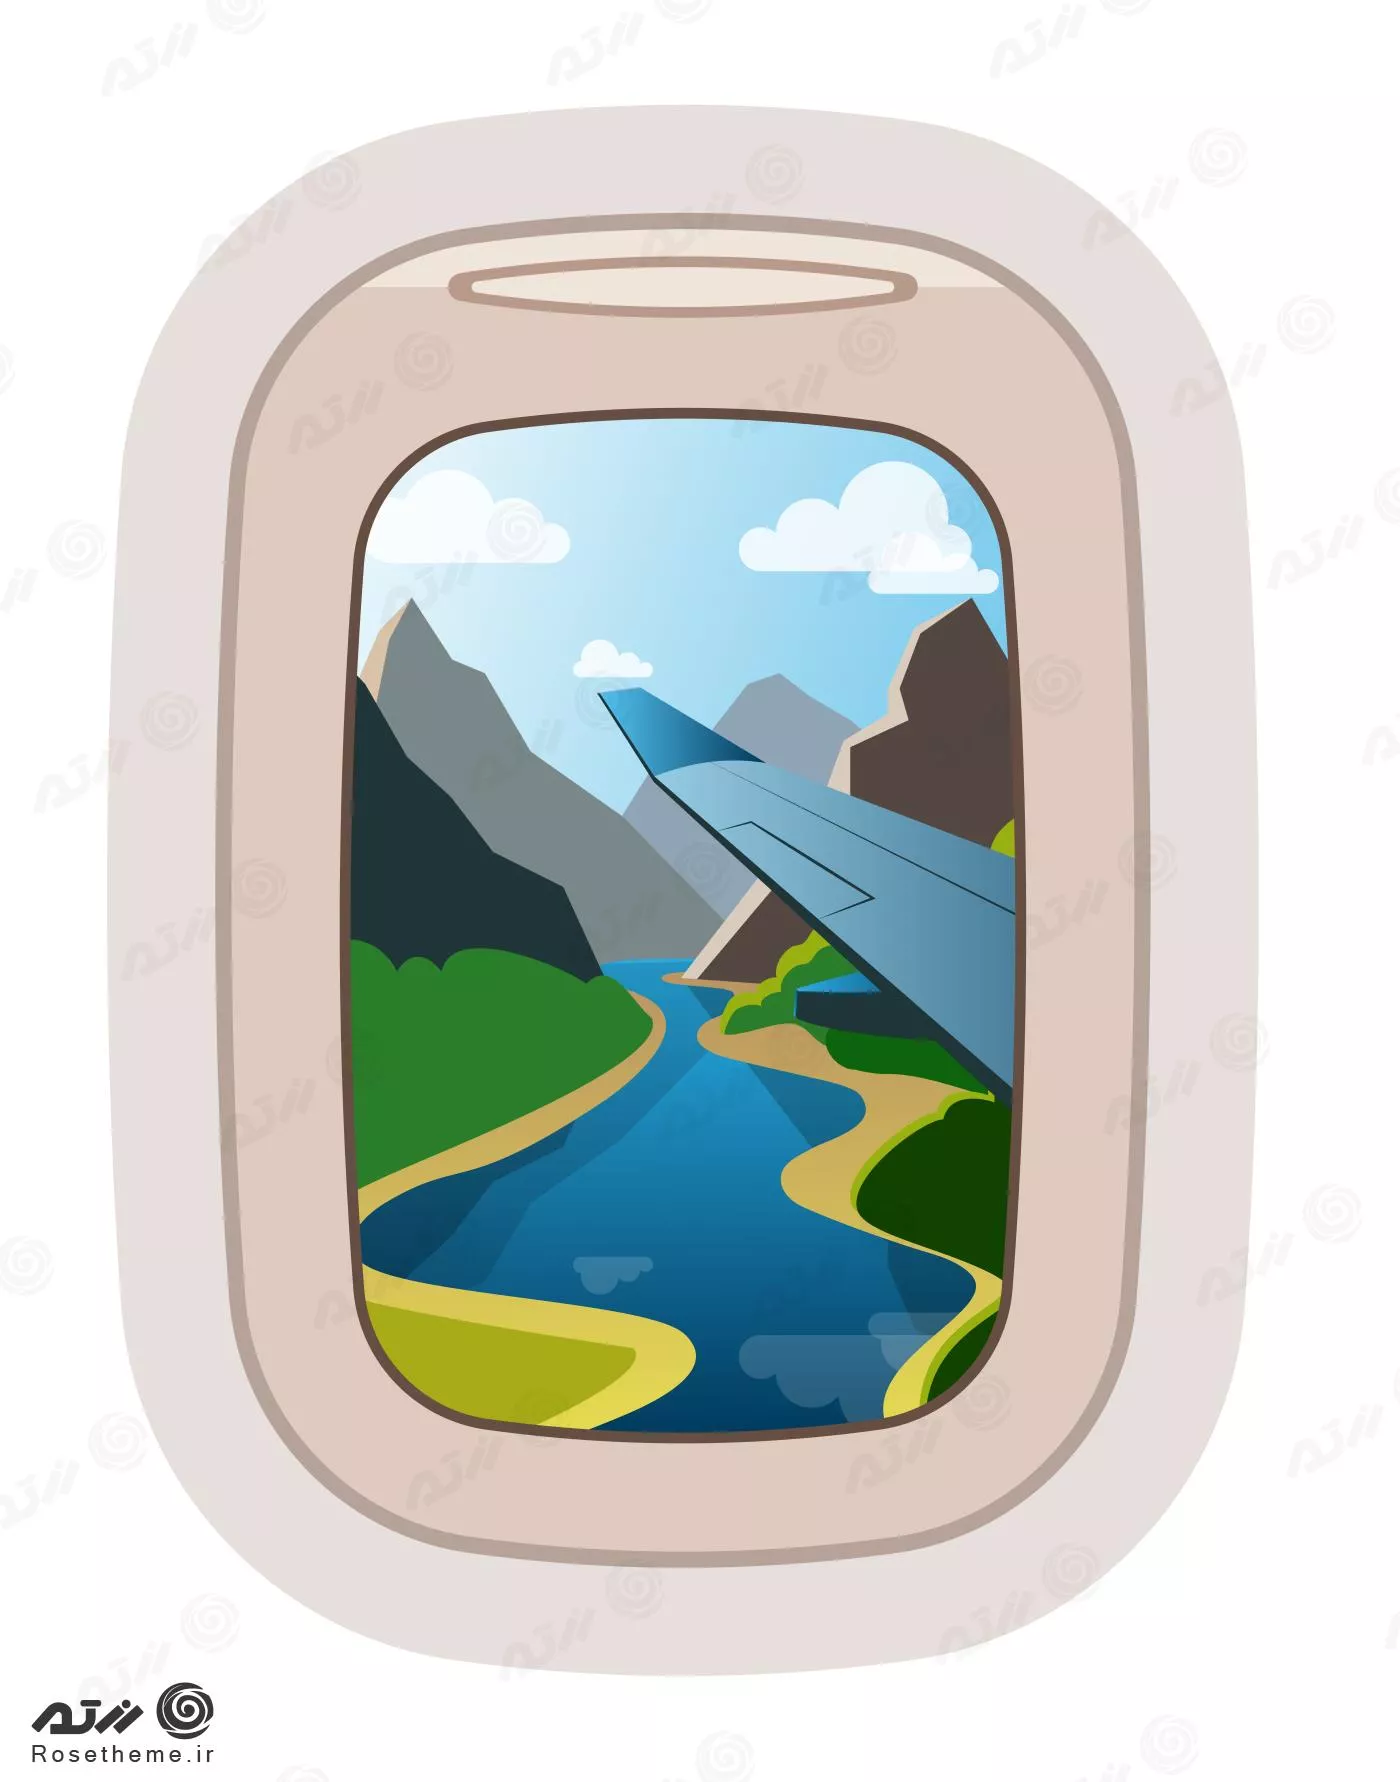 وکتور EPS لایه باز طرح گرافیکی پنجره هواپیما با منطره کوه و رودخانه و ابر 22014